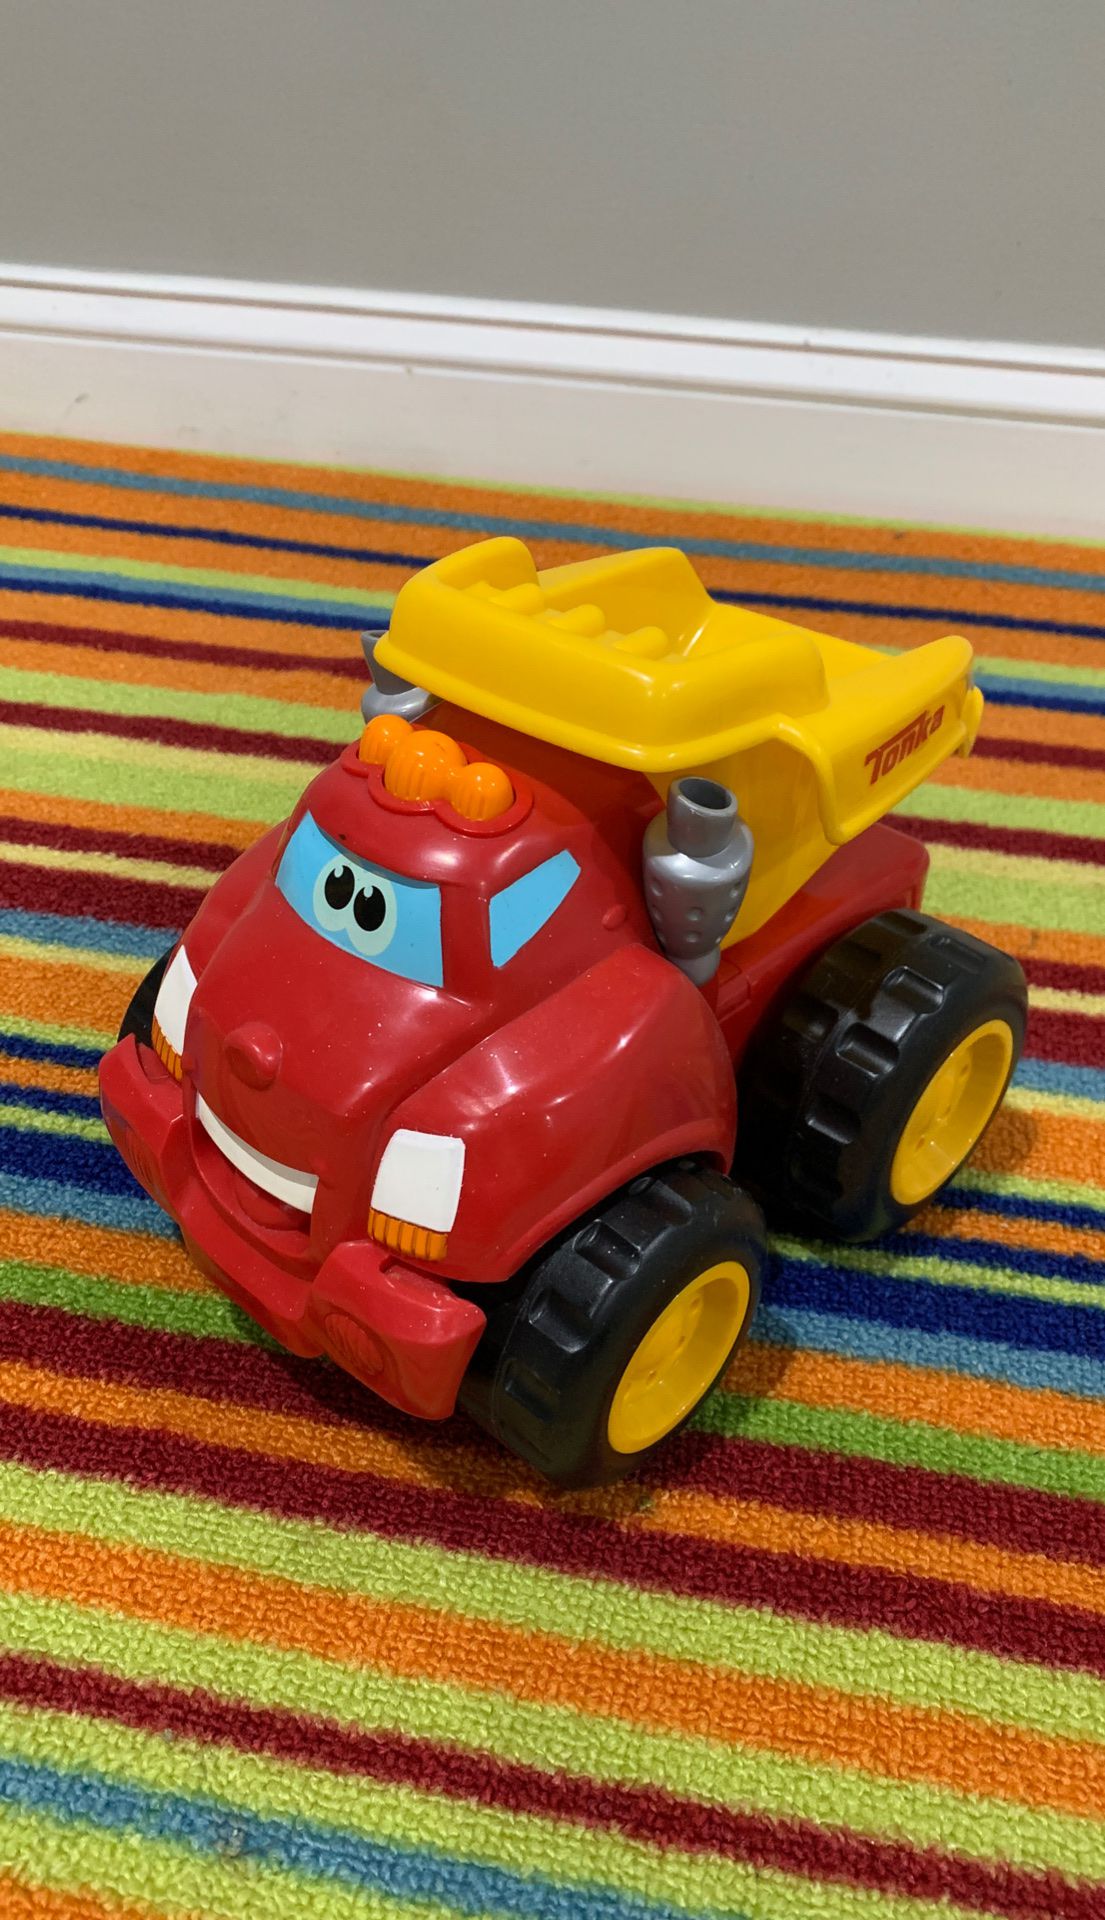 Baby toy dump truck